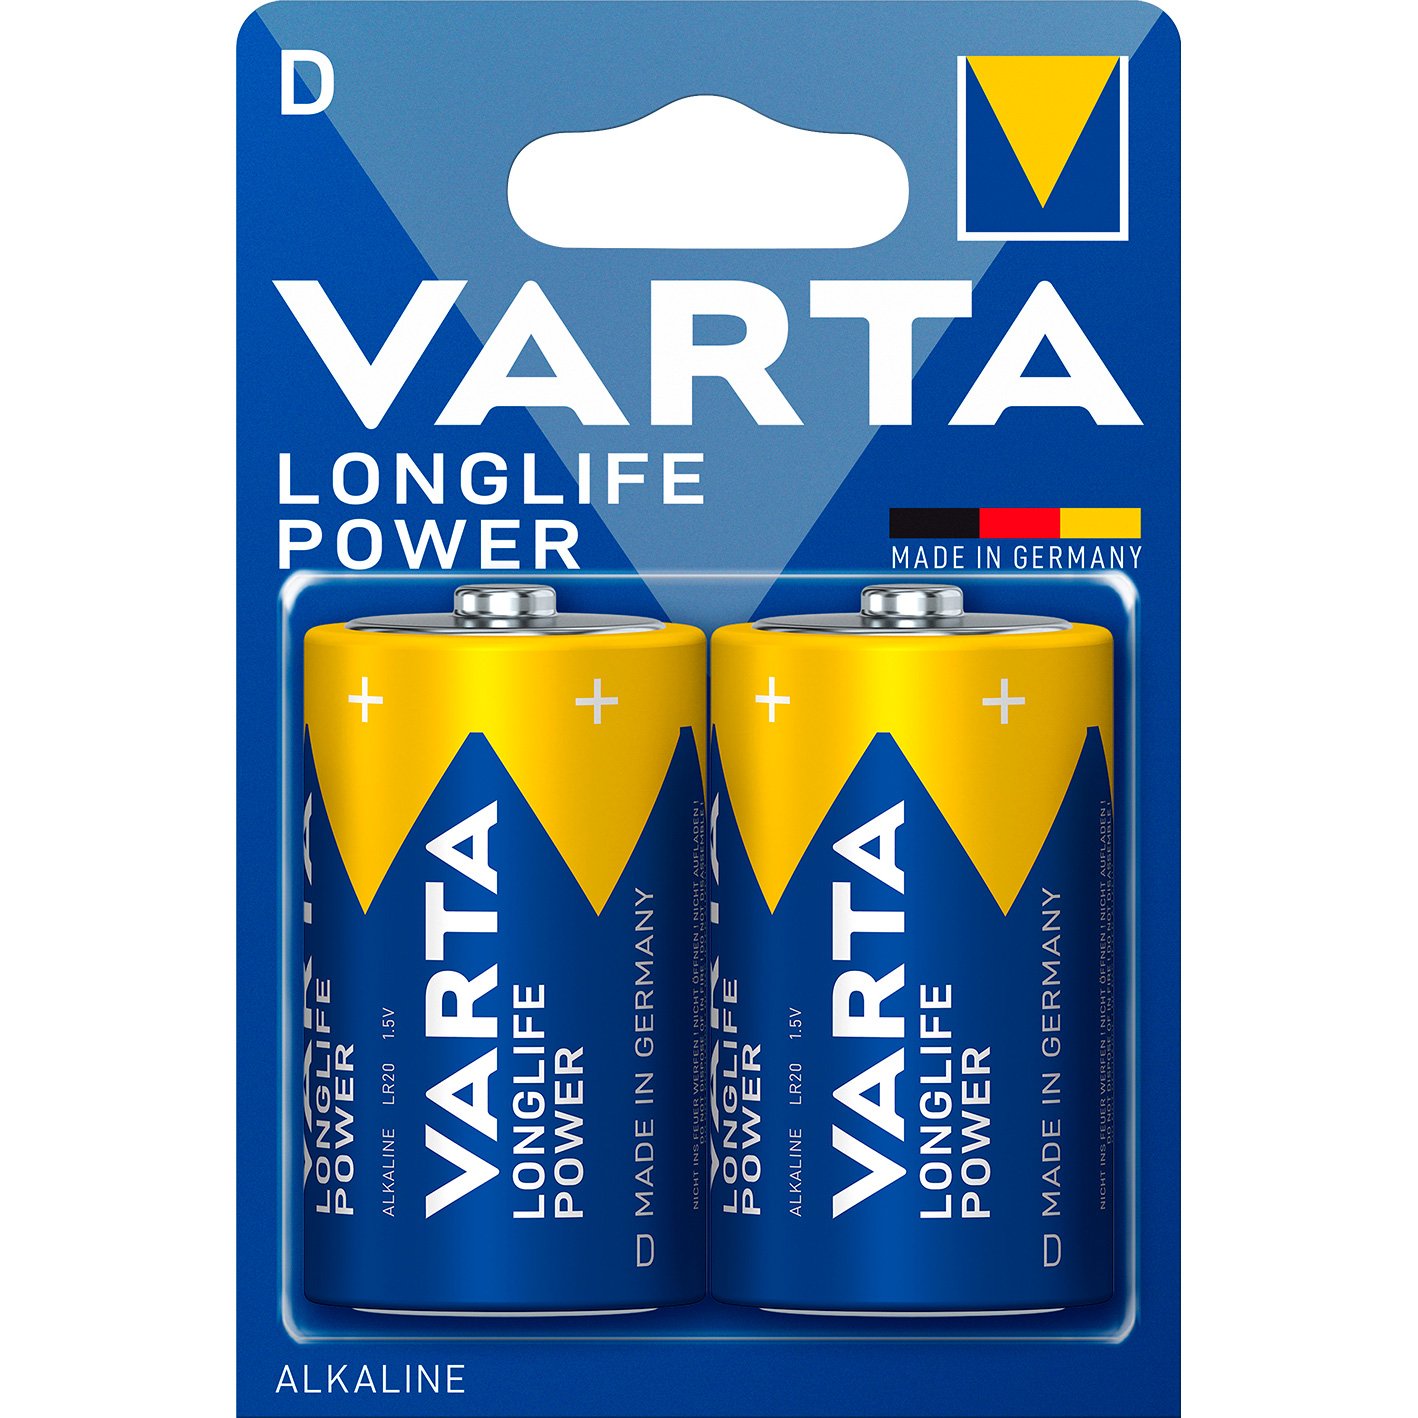 VARTA LongLife Power batteri D/LR20 1.5 v 2 stk